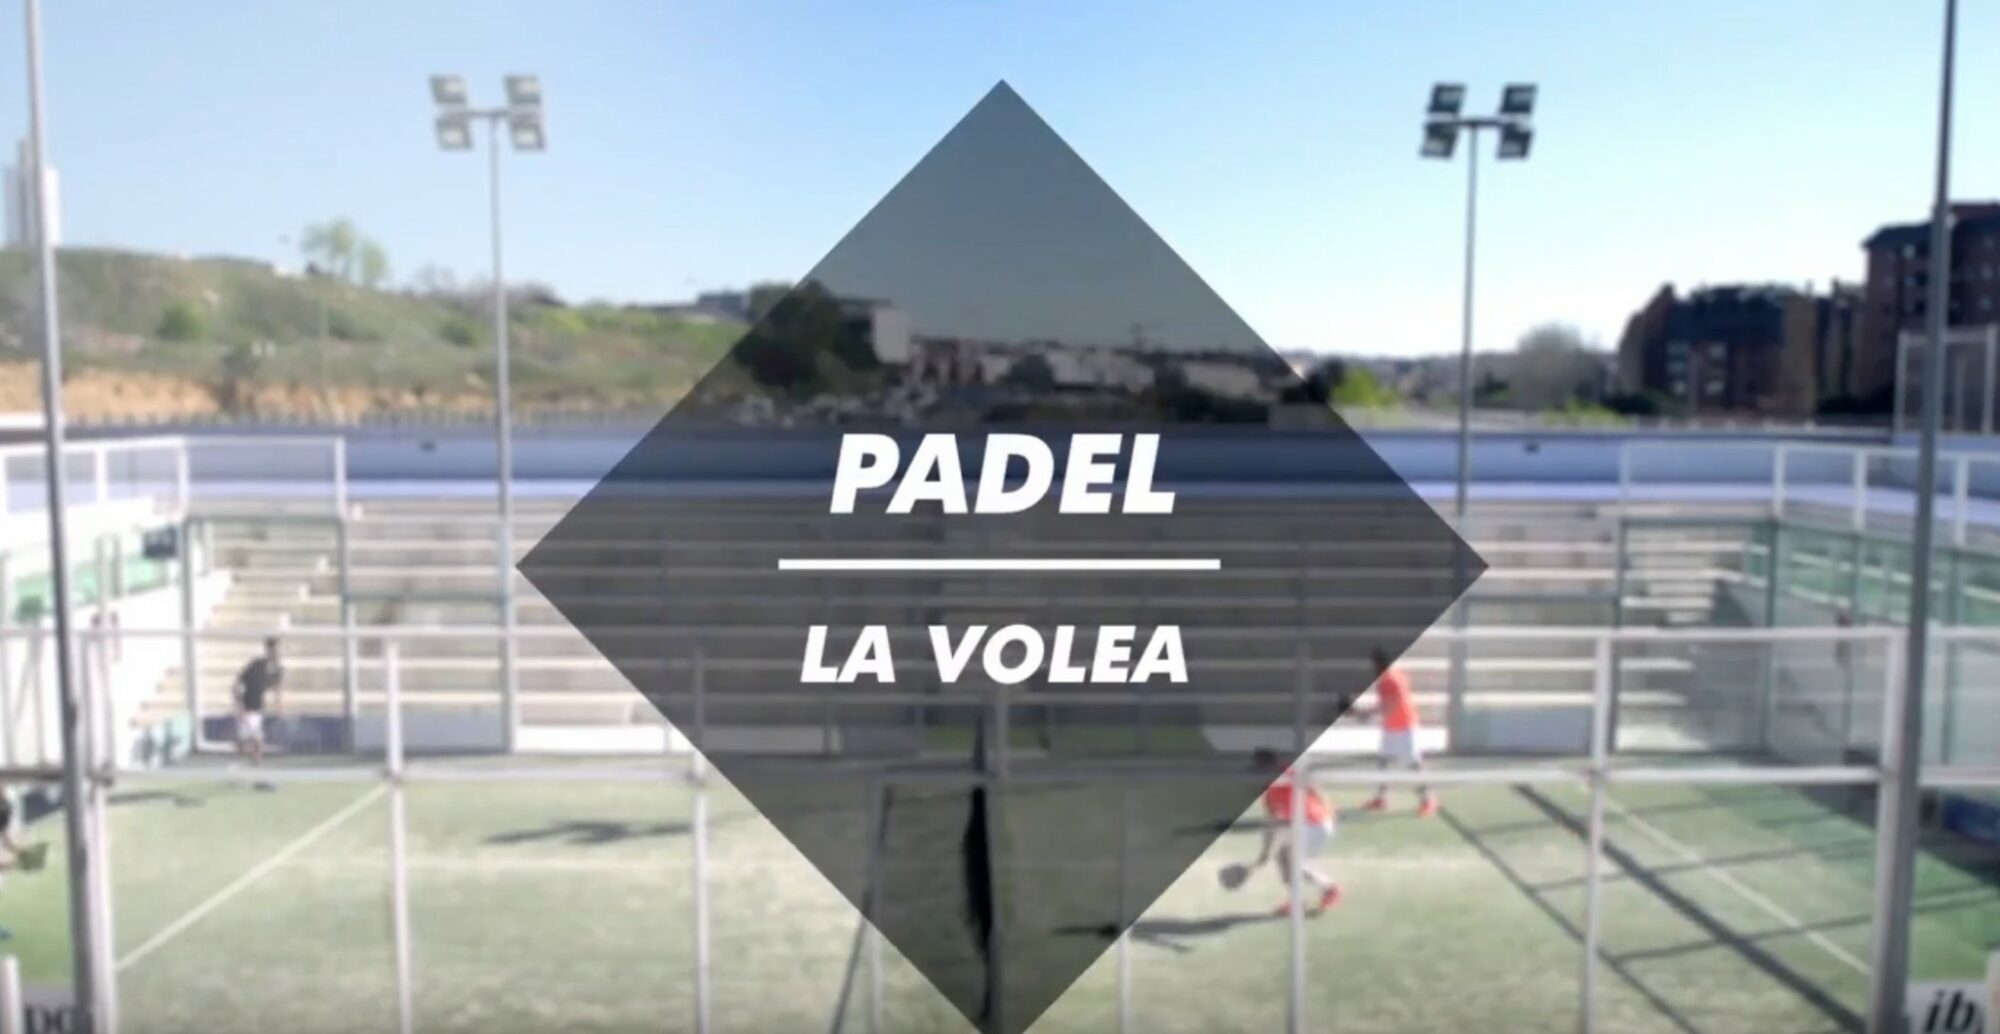 Volleys at padel - A necessity